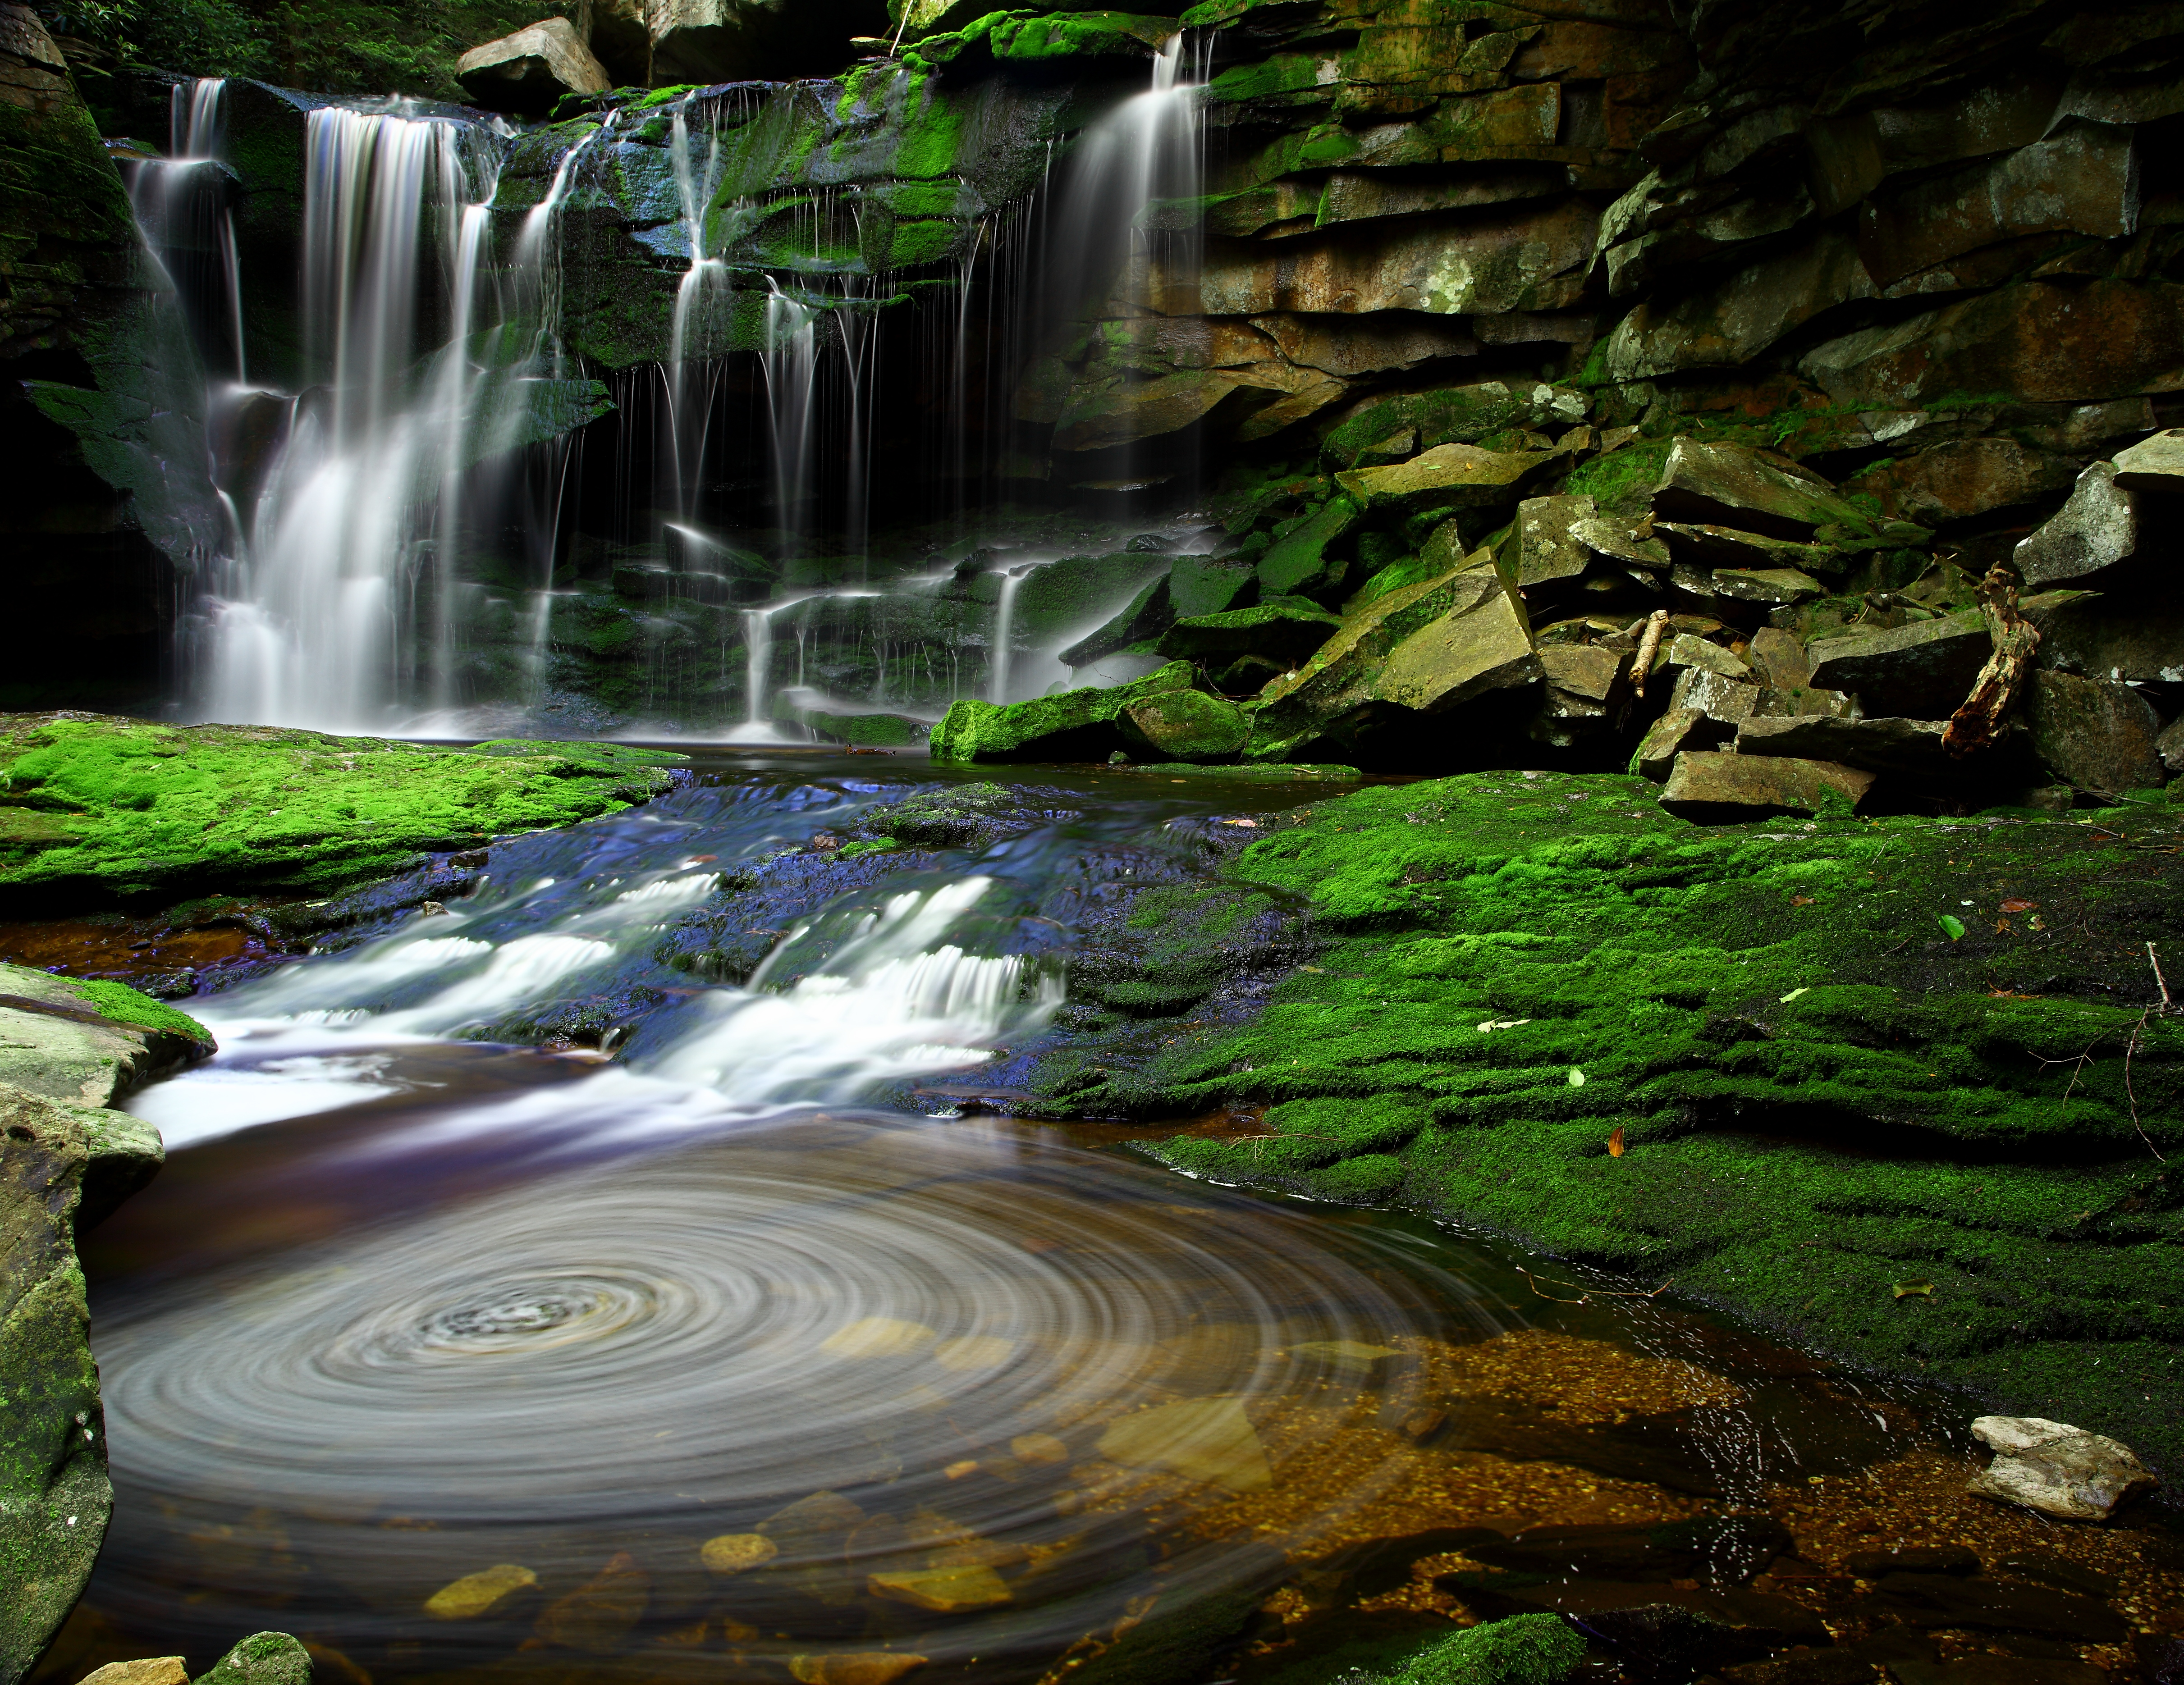 'Elakala Waterfalls Swirling Pool Mossy Rocks' by ForestWander